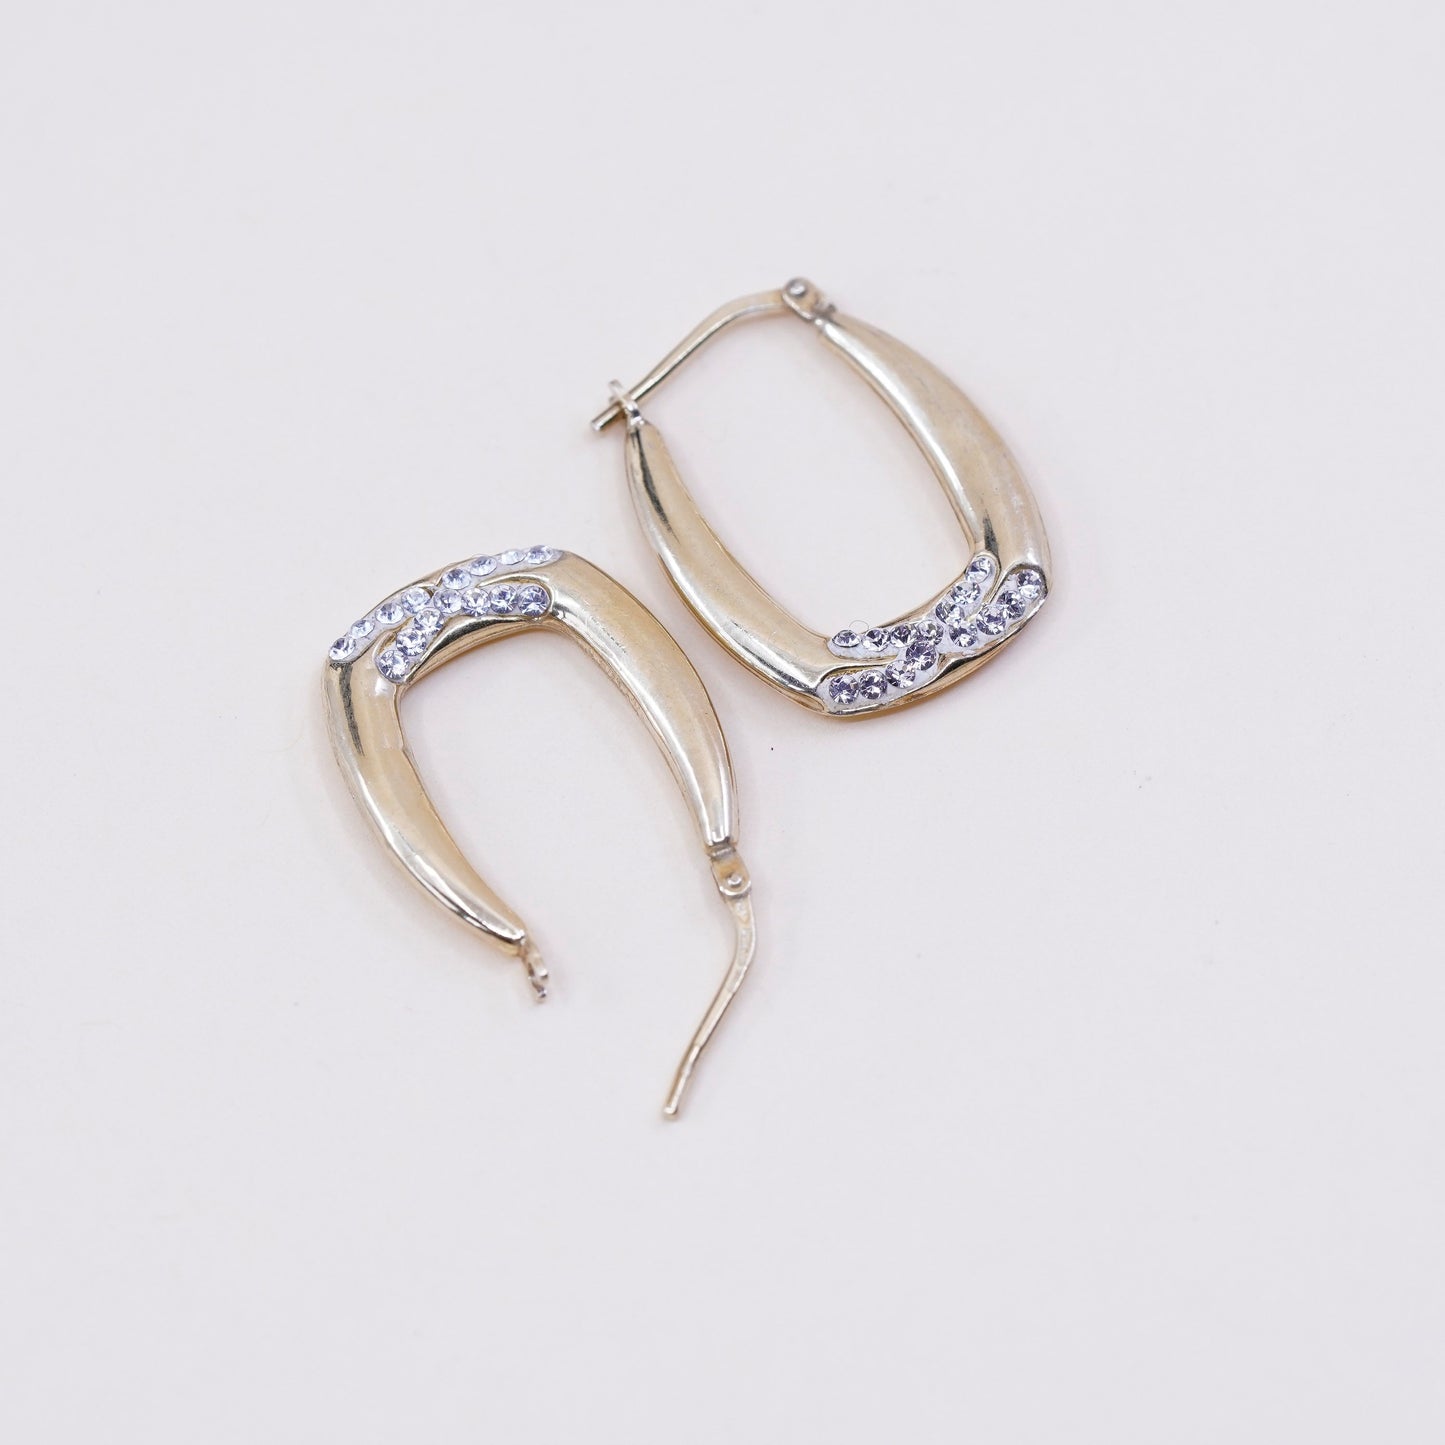 1”, Jordan vermeil gold over sterling silver loop earrings, 925 hoops with Cz